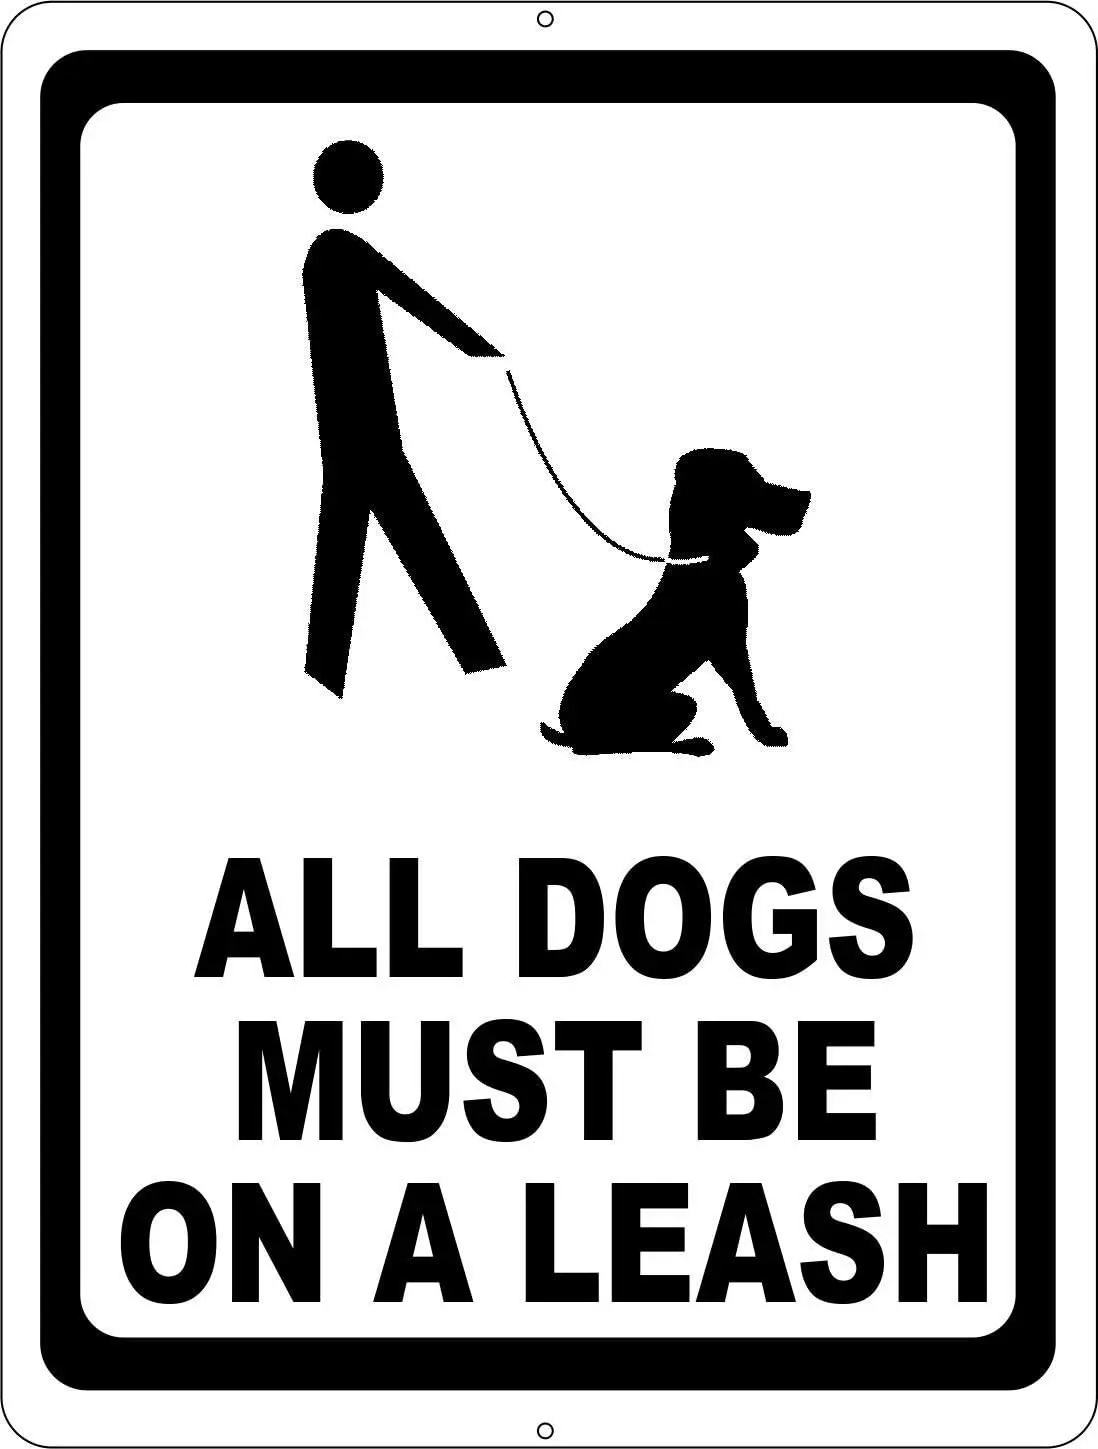 

Металлическая метка, все собаки должны быть на поводке, помогая держать домашних животных под контролем в сообществе